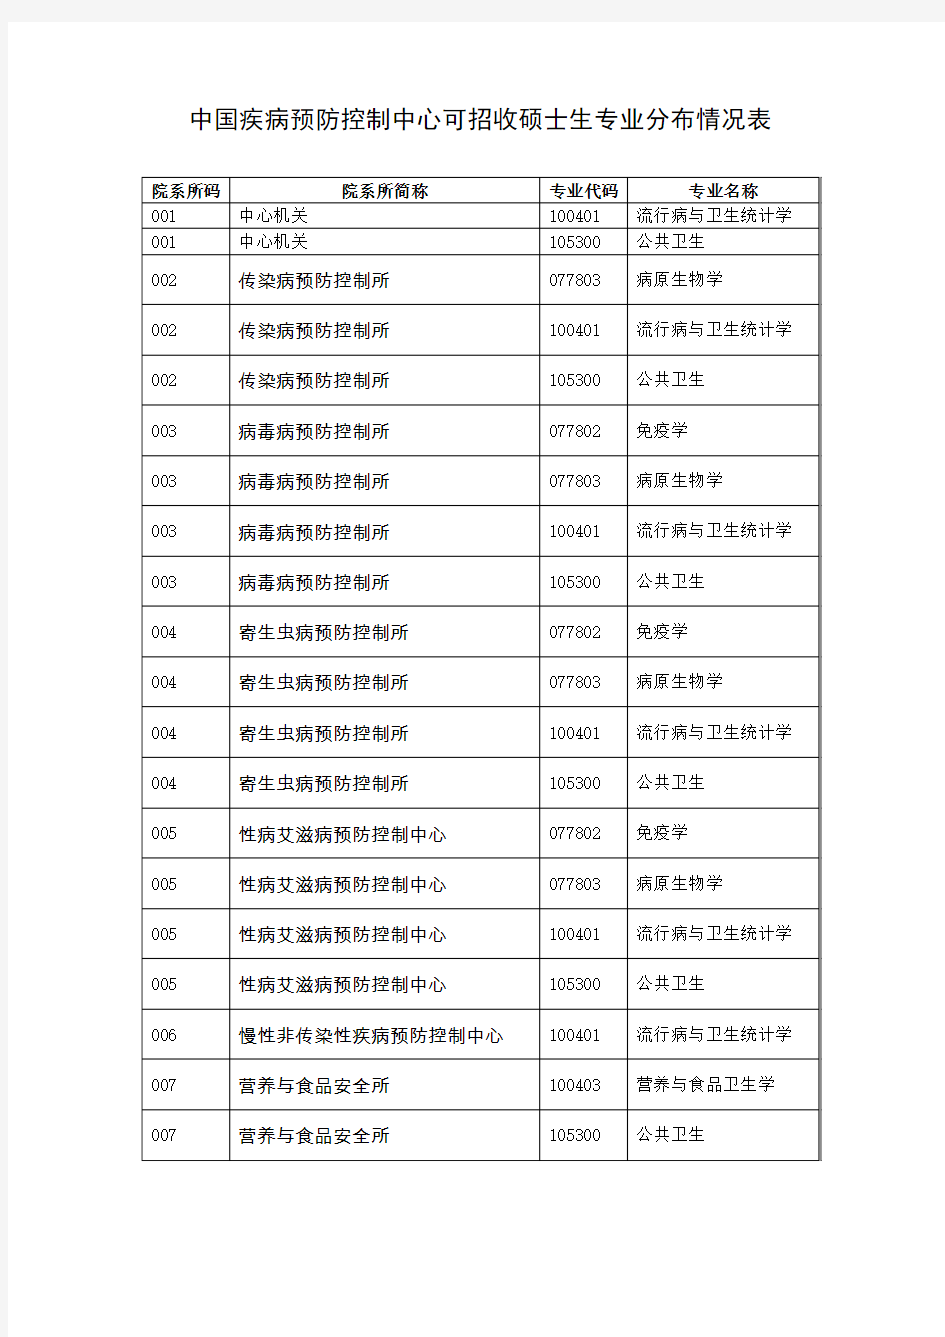 中国疾病预防控制中心可招收硕士生专业分布情况表